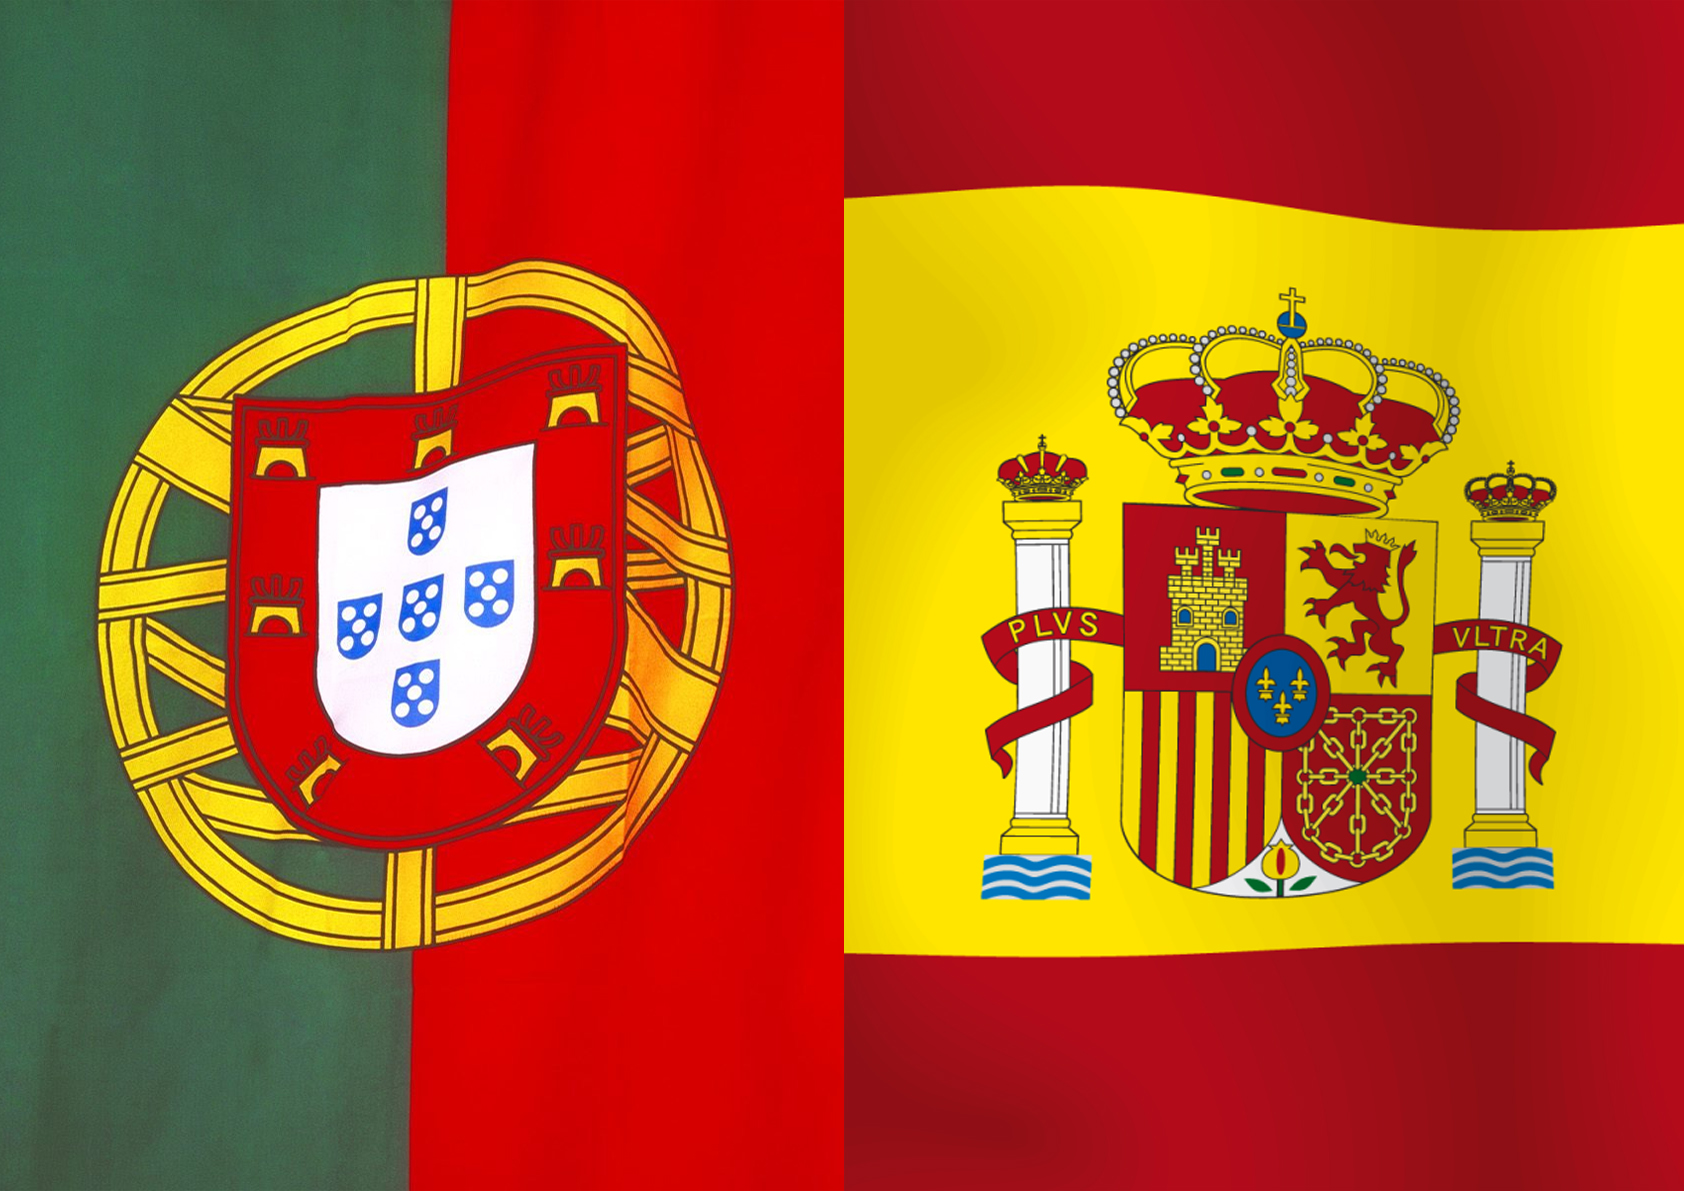 Espanha quer organizar Europeu ou Mundial de futebol juntamente